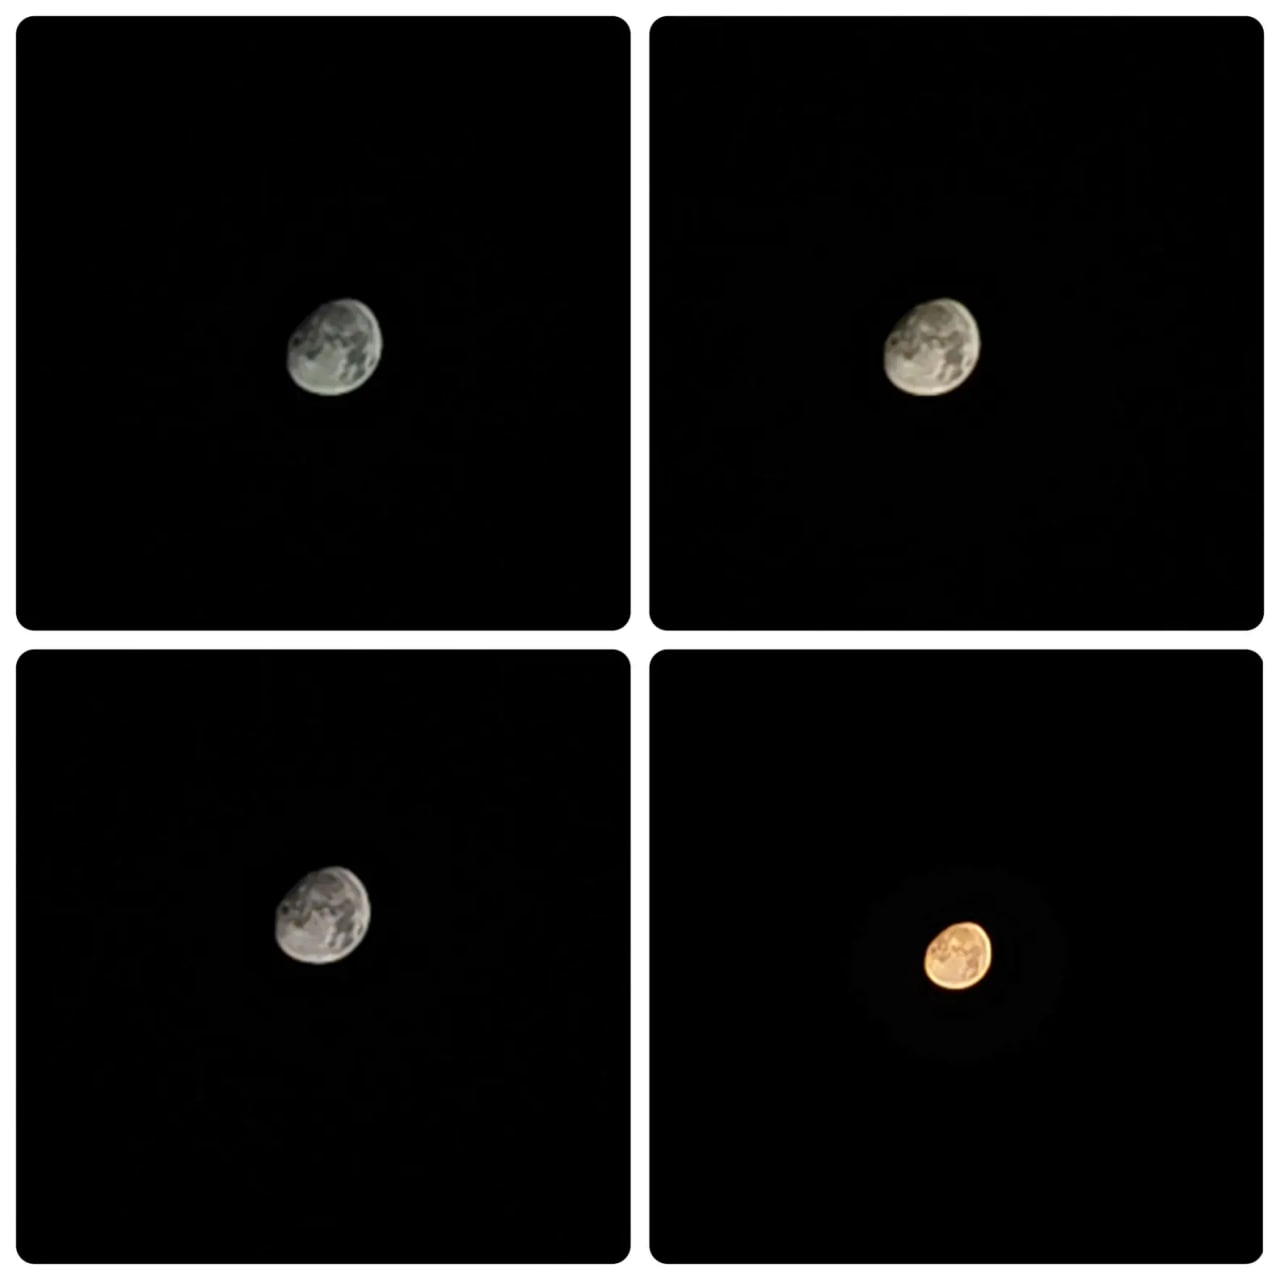 OnePlus 11 Moon capture OxygenOS 13.1